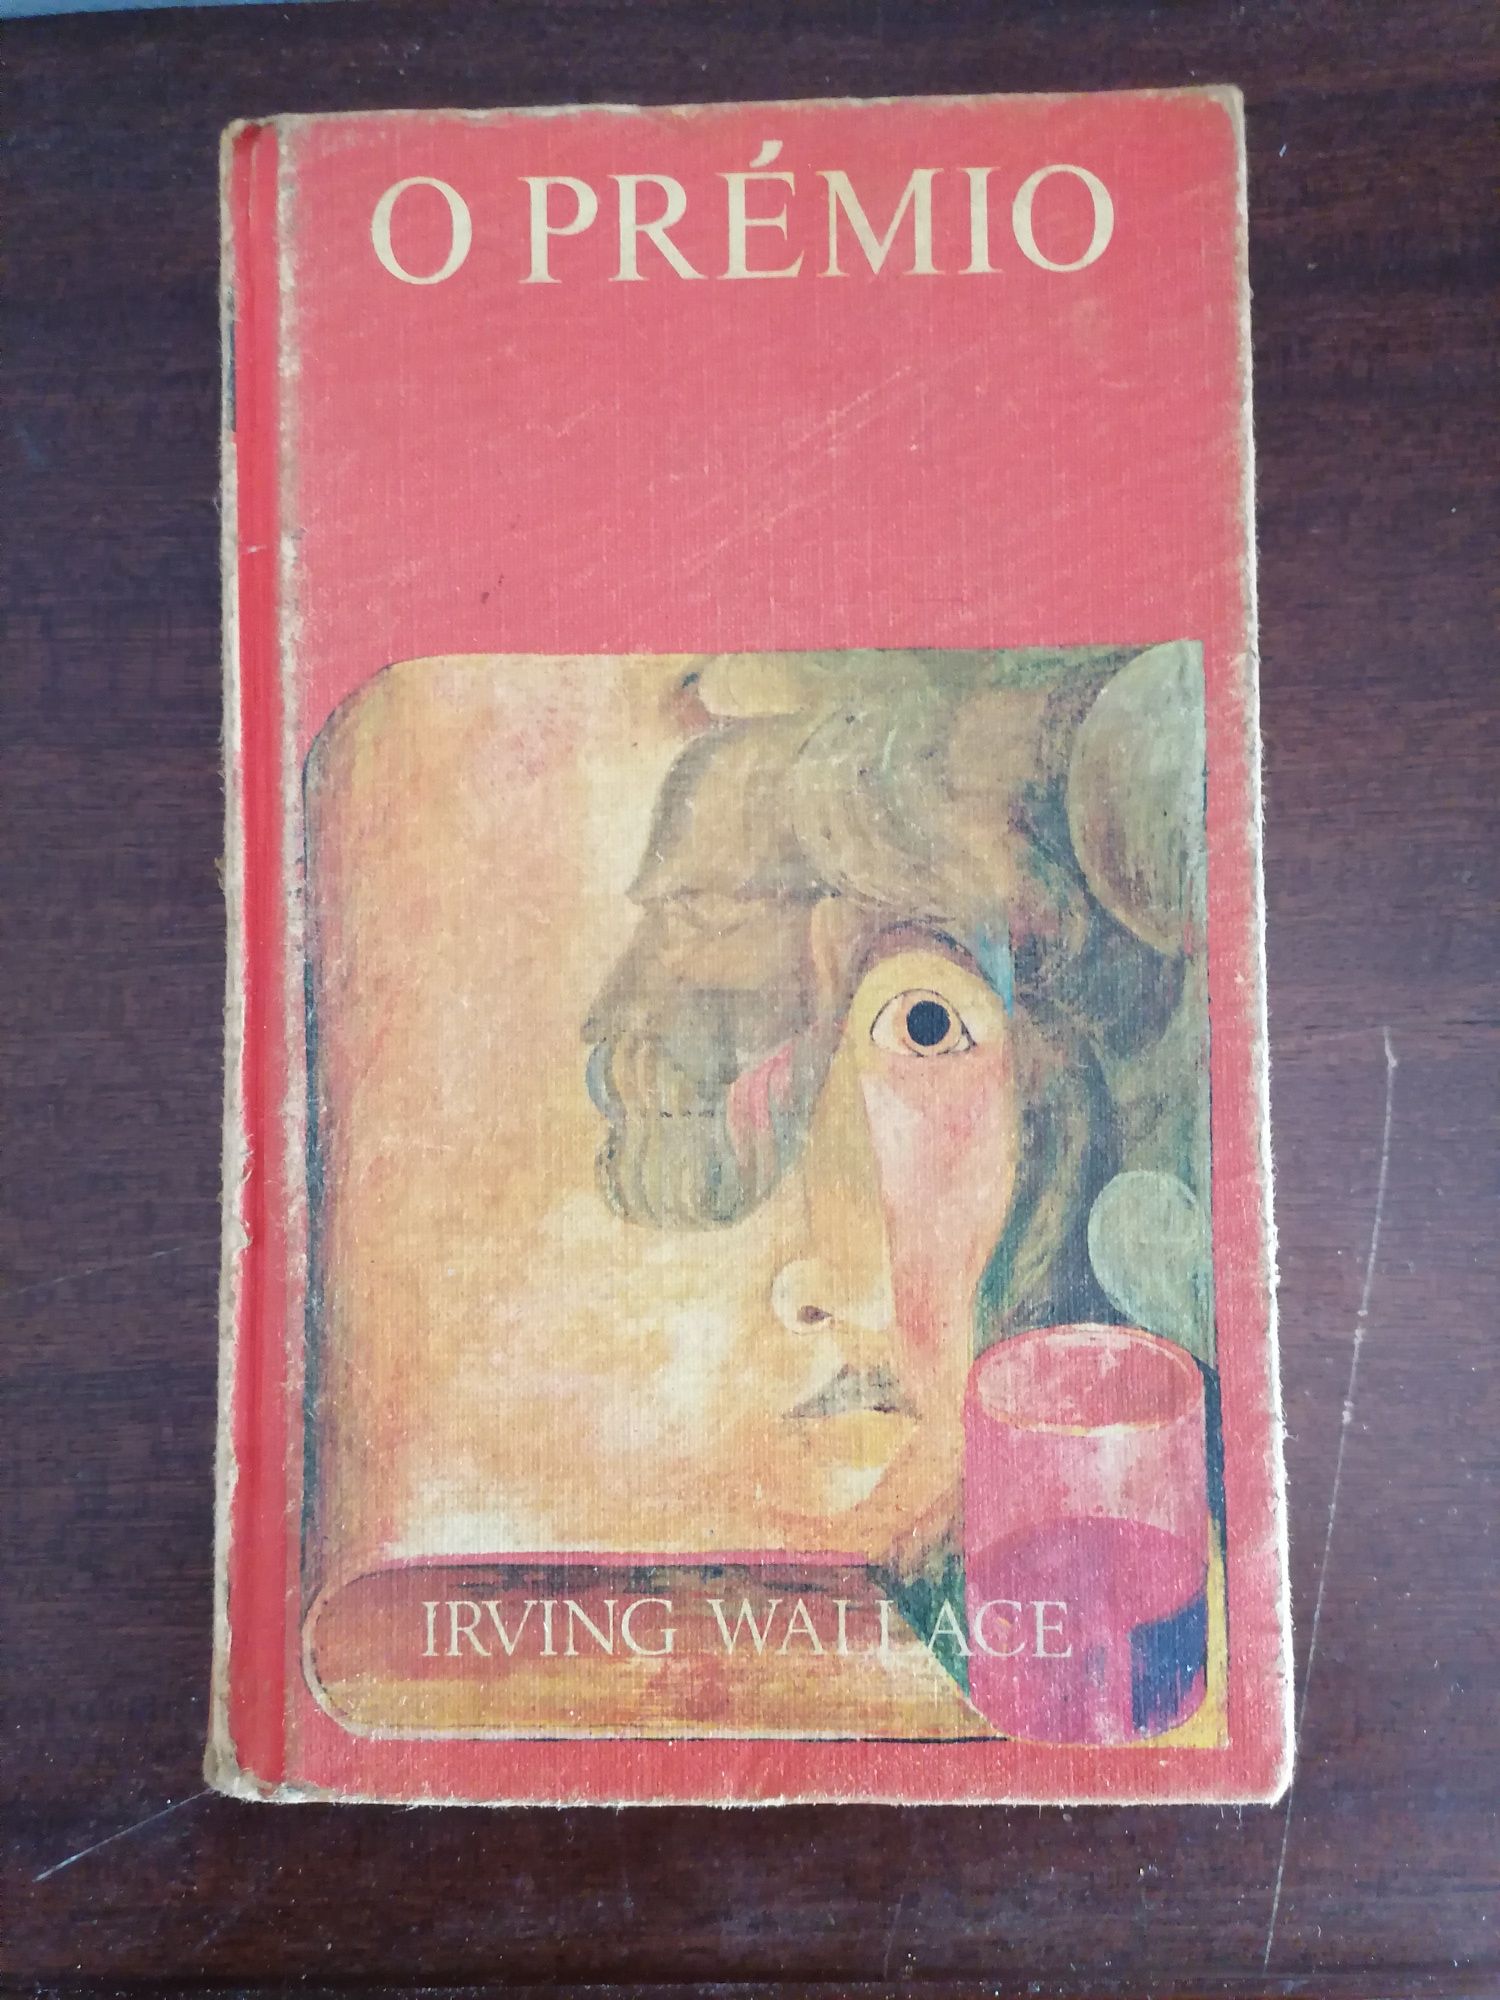 Livro "O PRÉMIO" de Irving Wallace